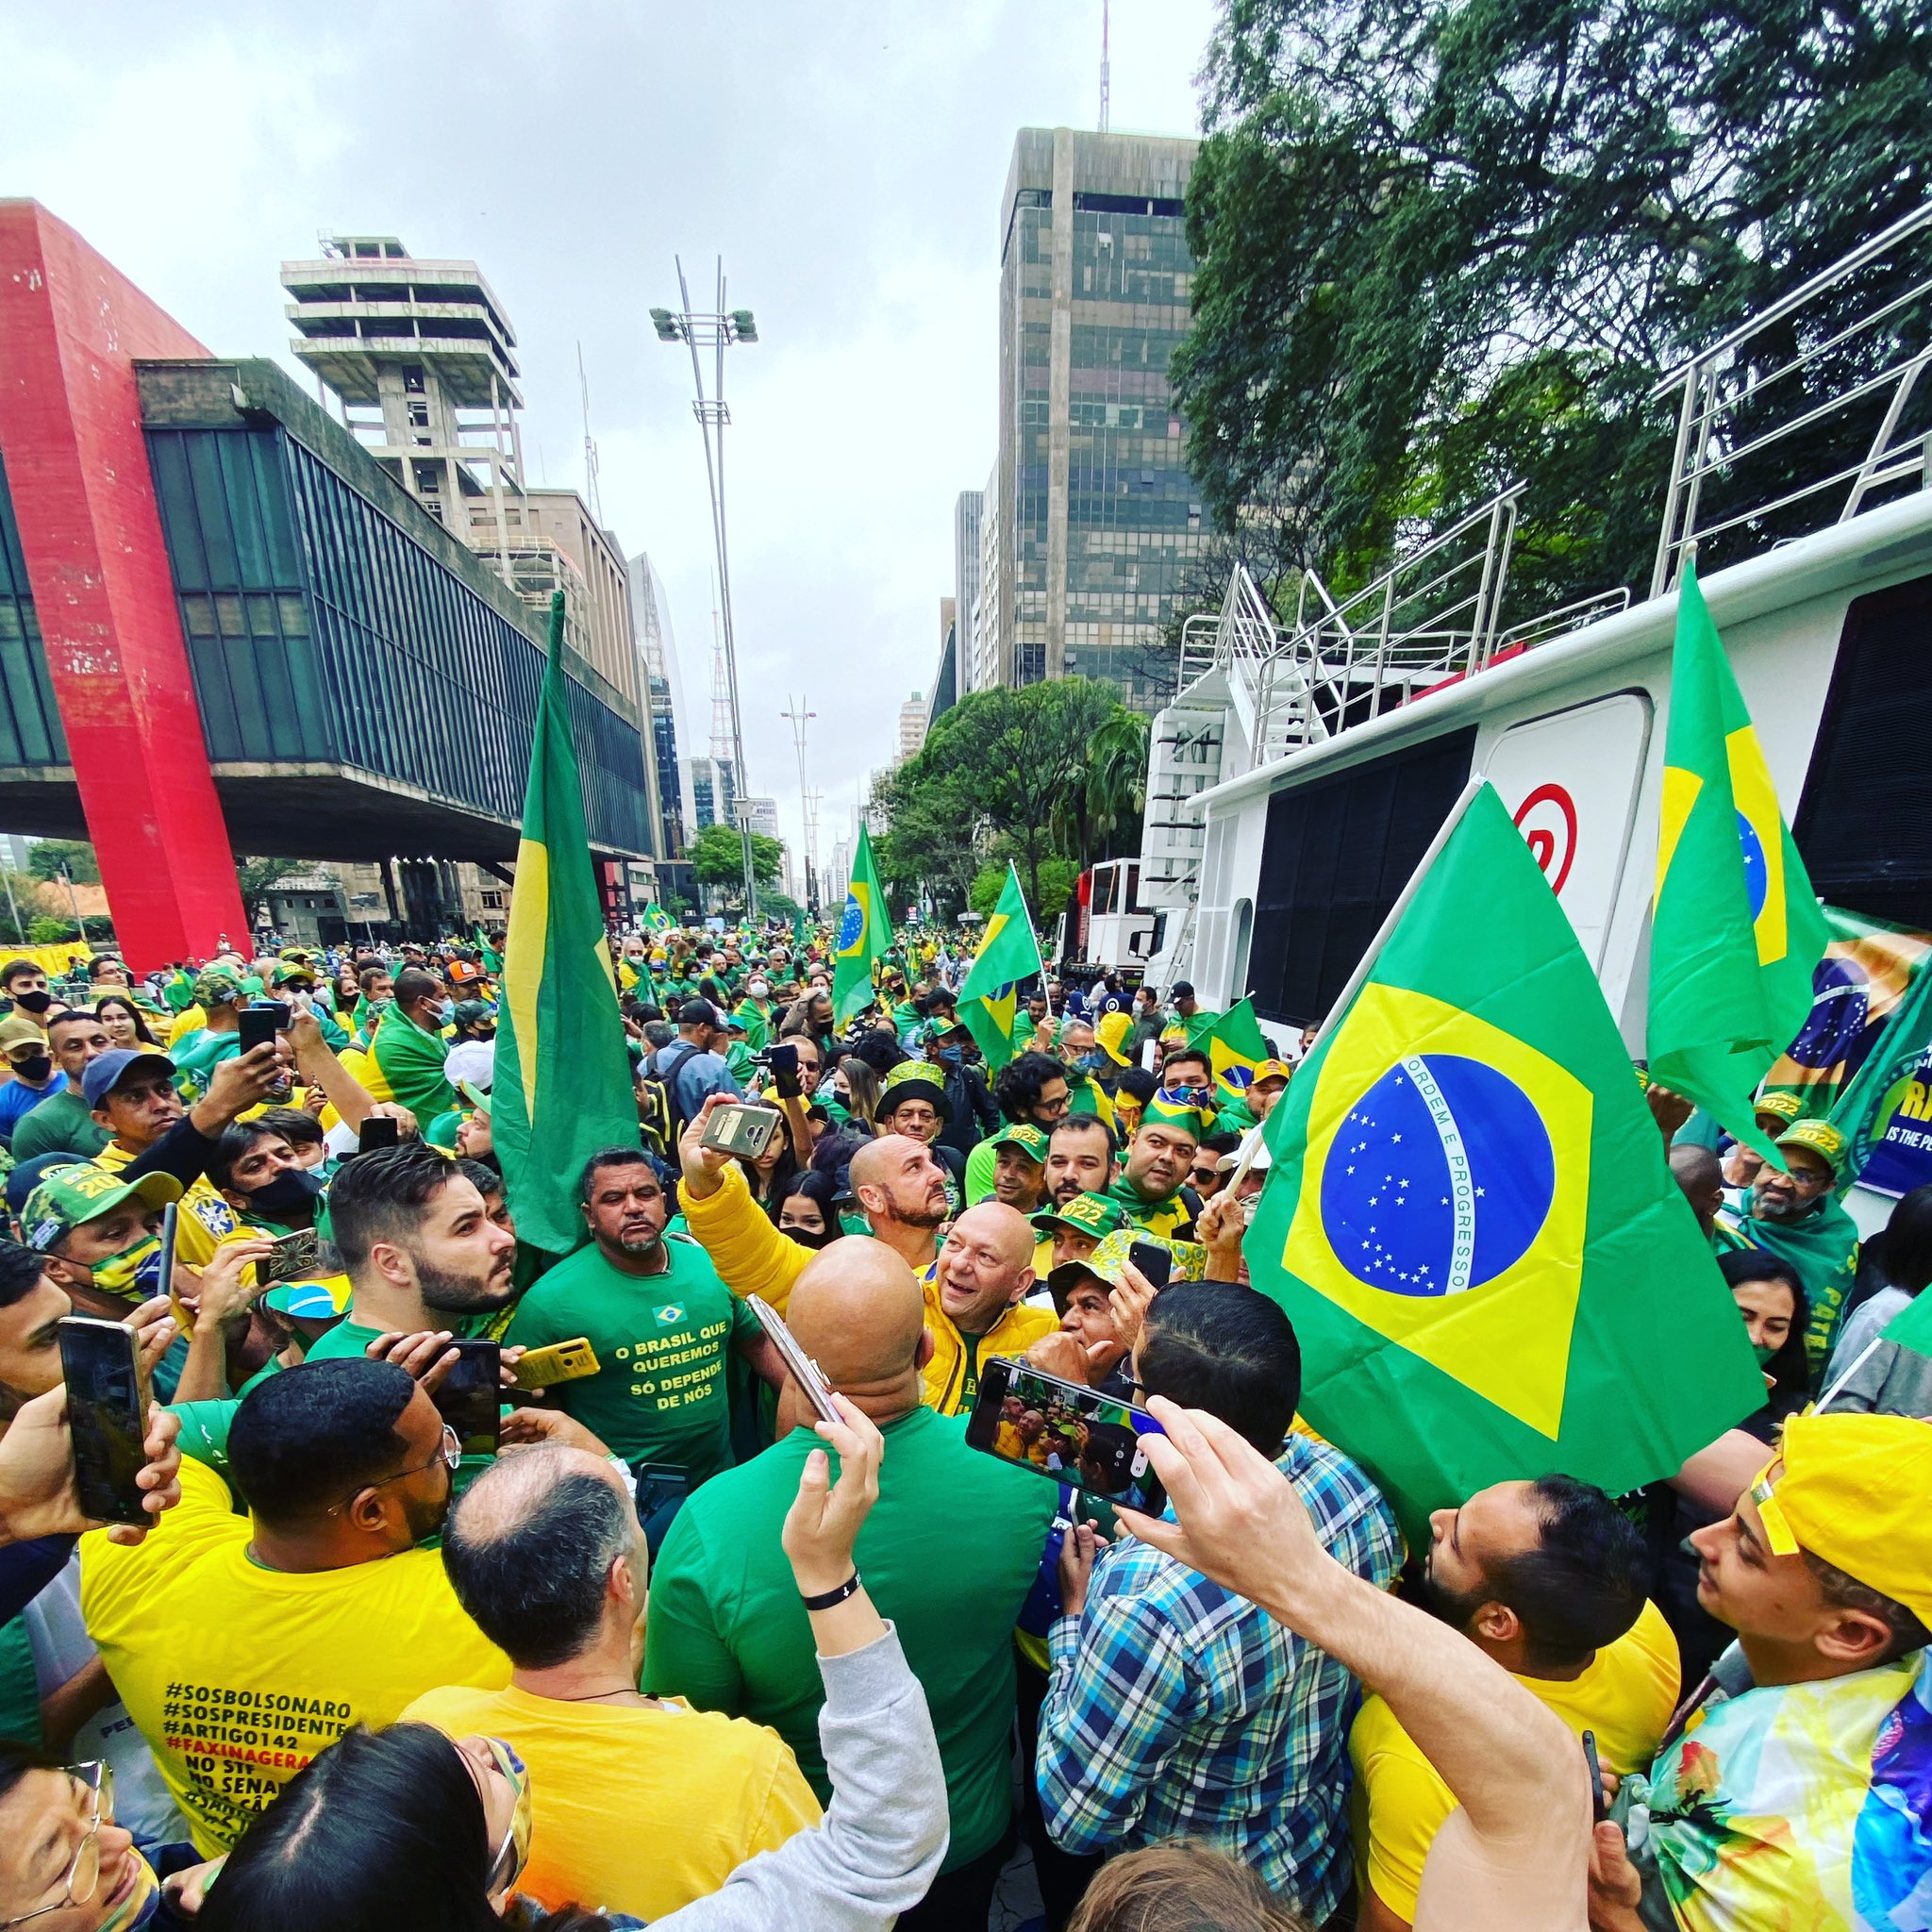 AO VIVO: Bolsonaro discursa para multidão na Av. Paulista; assista